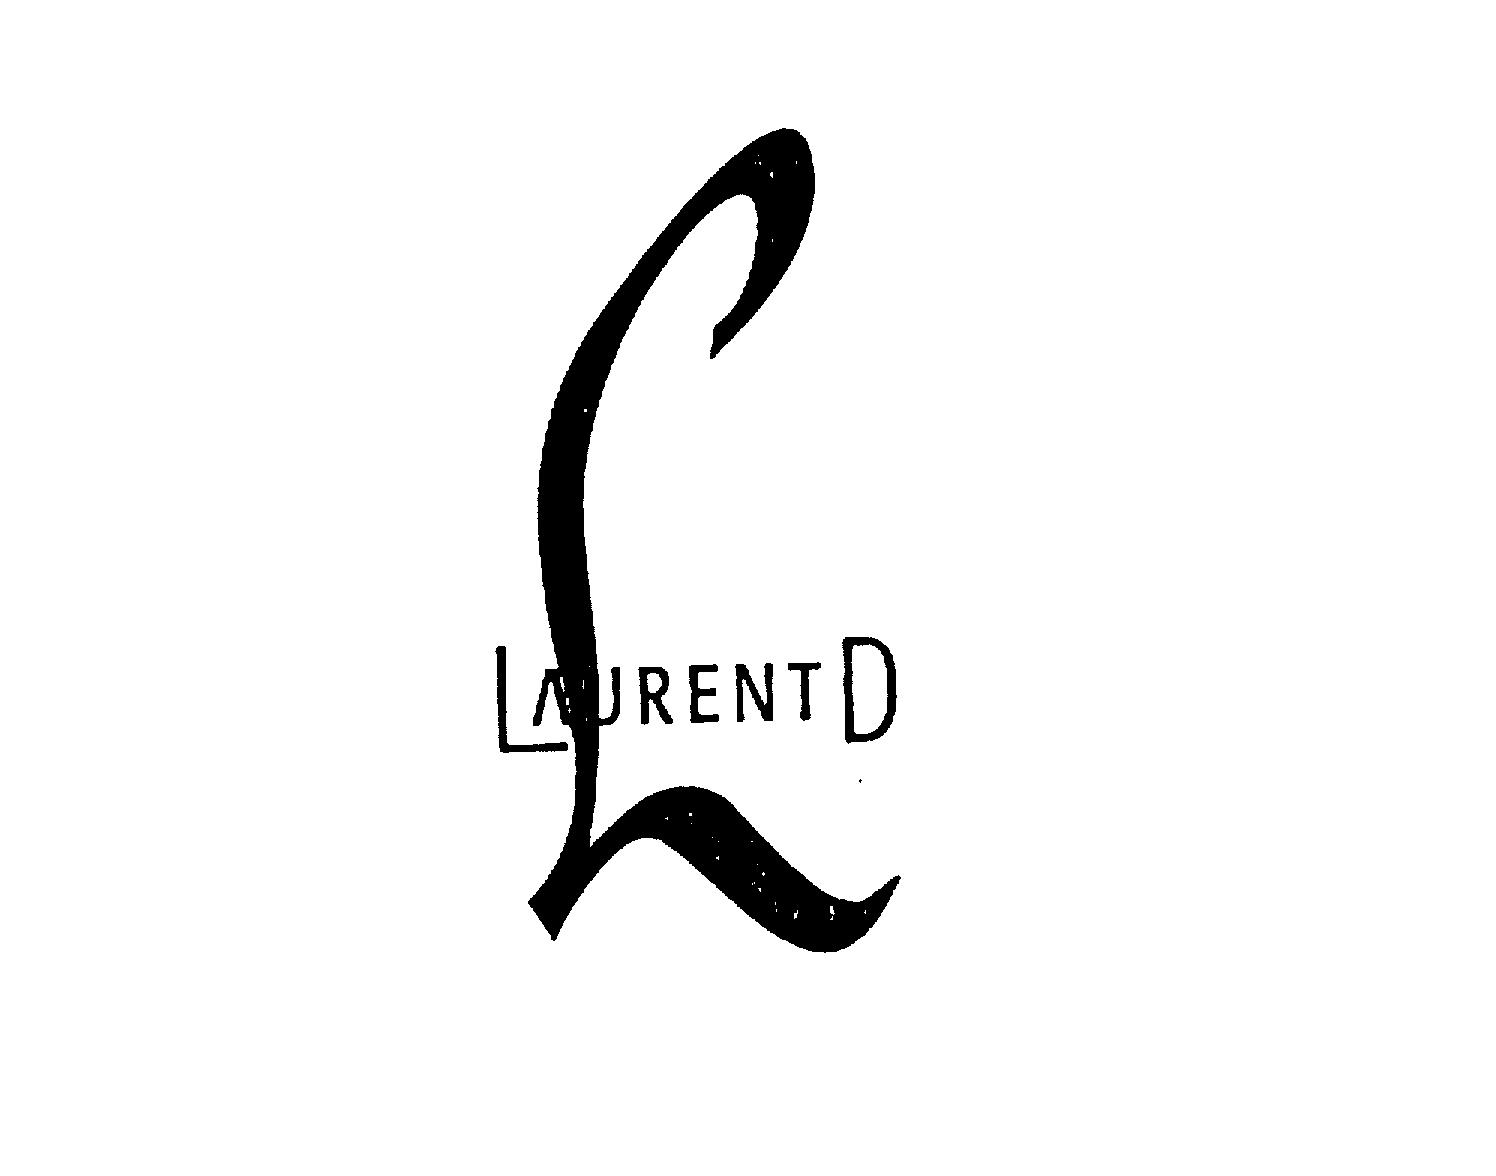  L LAURENT D